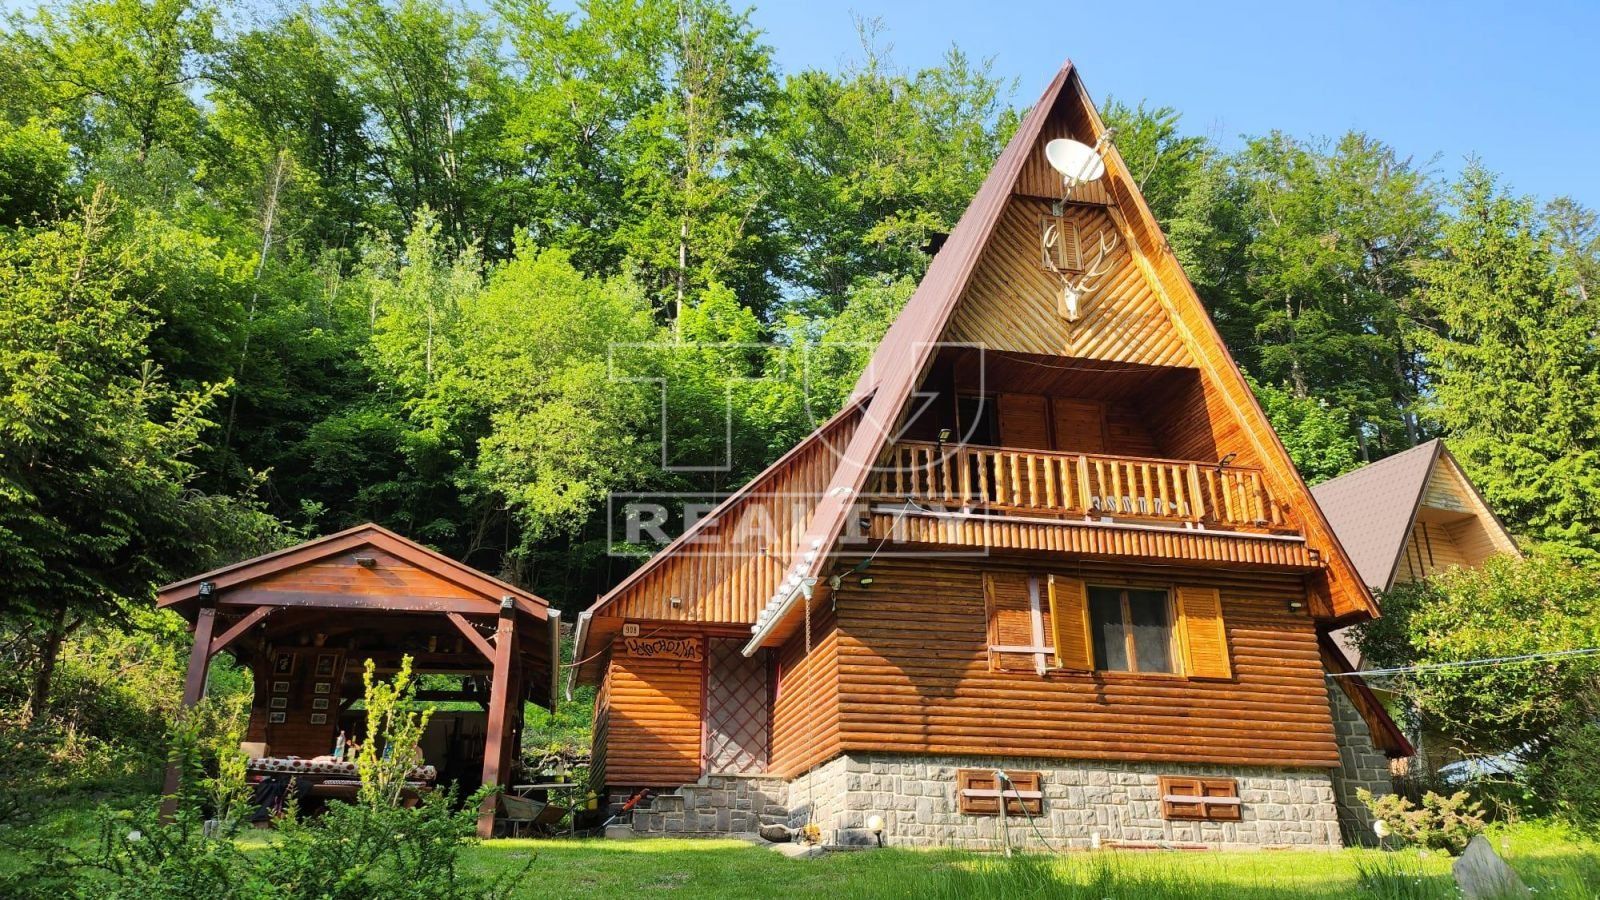 Krásna Rekreačná chata v nádhernom prostredí Dúbravky v kat. území obce Oslany.